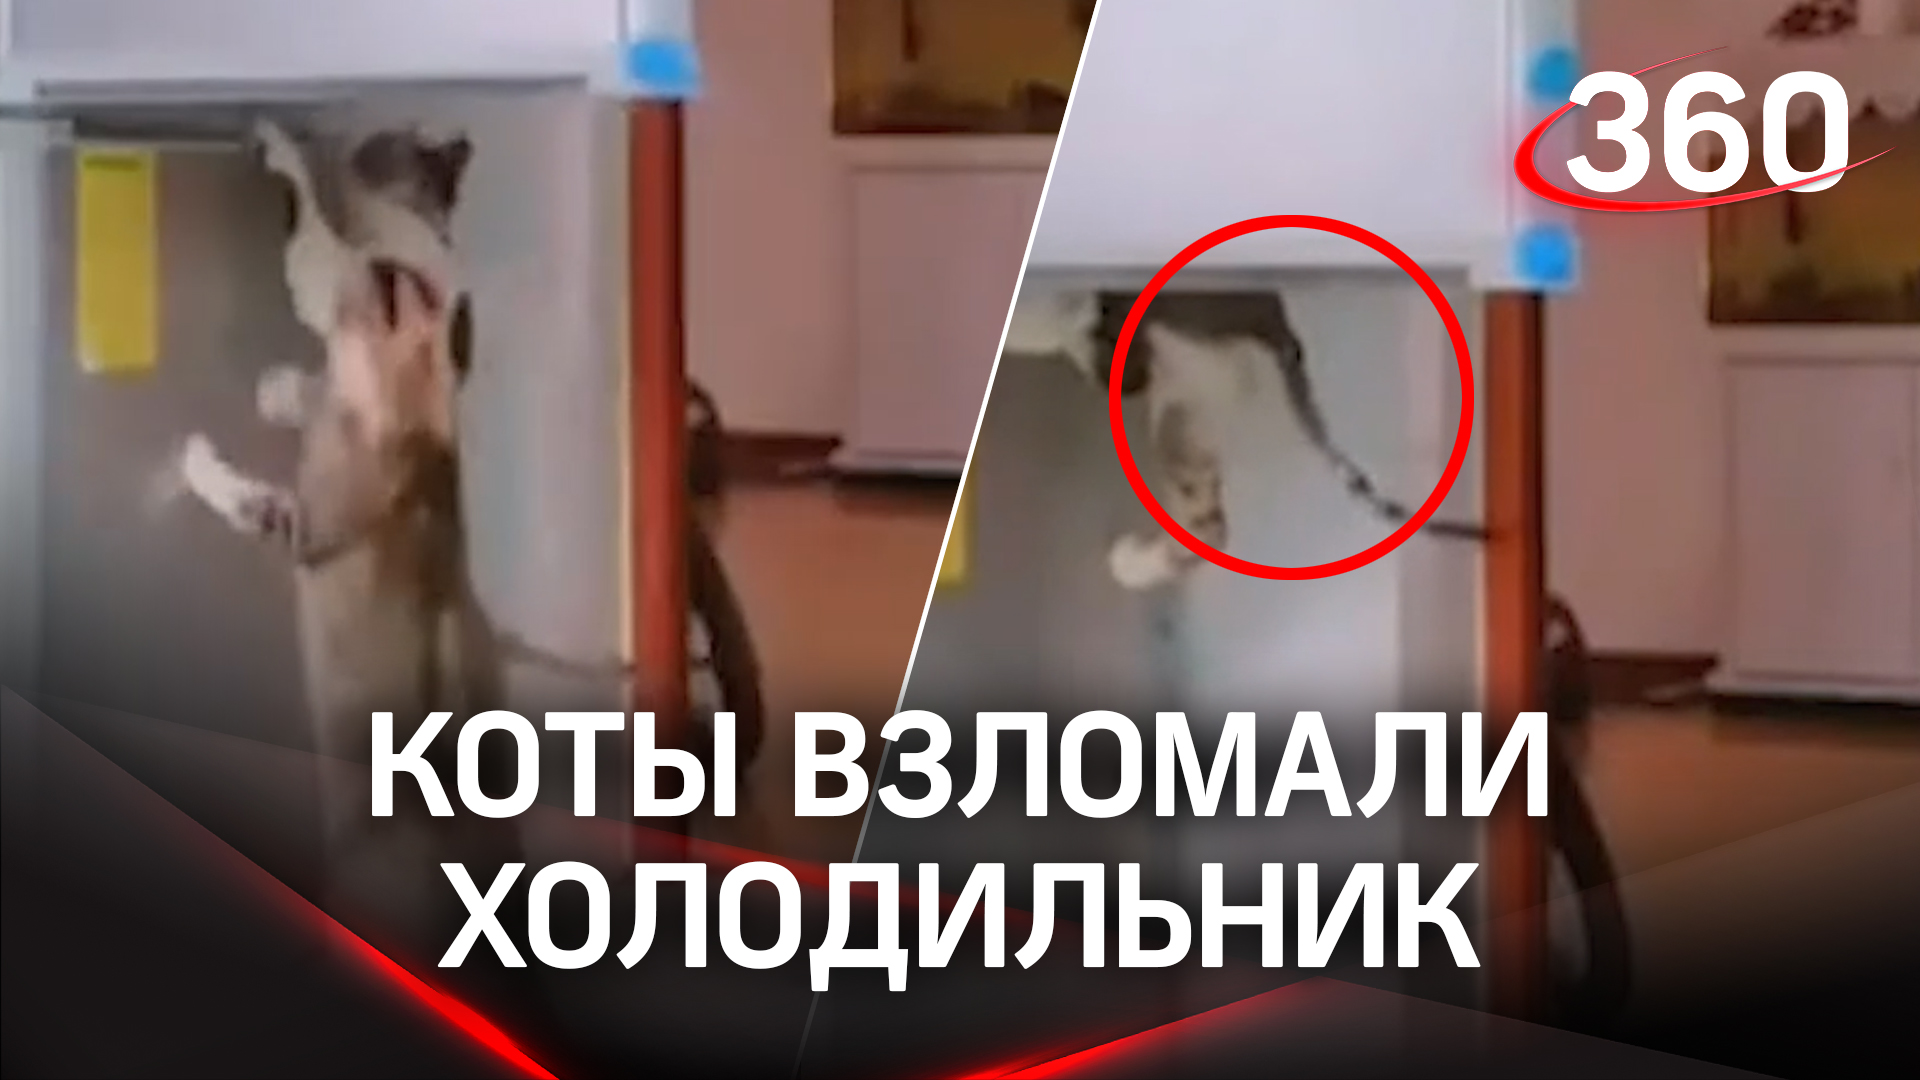 Всемогущие коты взломали неприступный холодильник